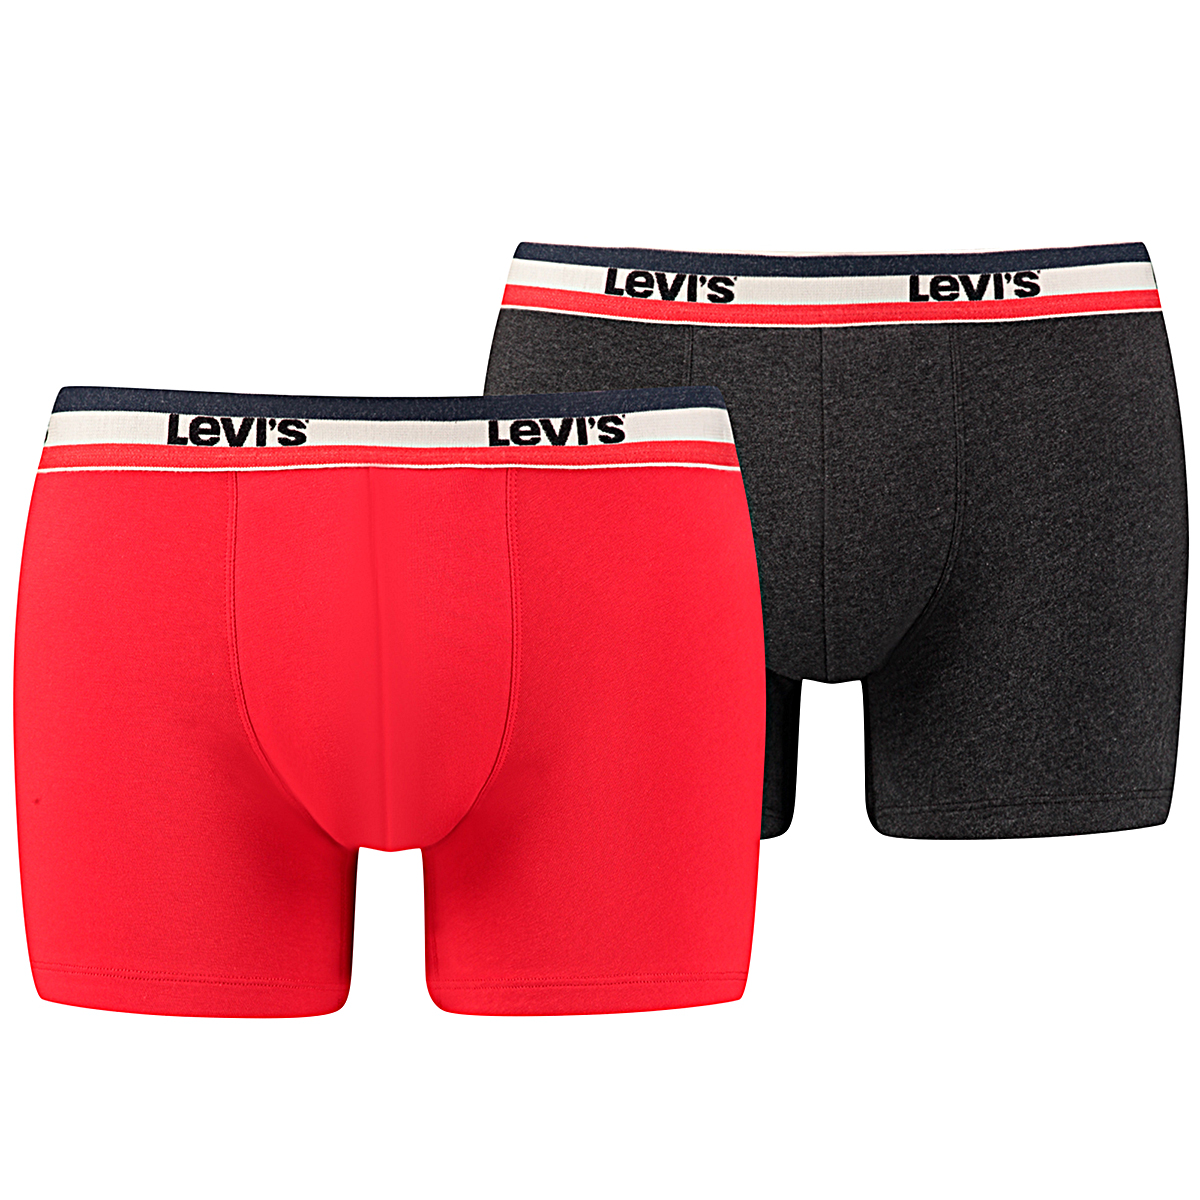 2 er Pack Levis Boxer Brief Boxershorts Men Herren Unterhose Pant Unterwäsche XL, 786 - Red / Black von Levi's